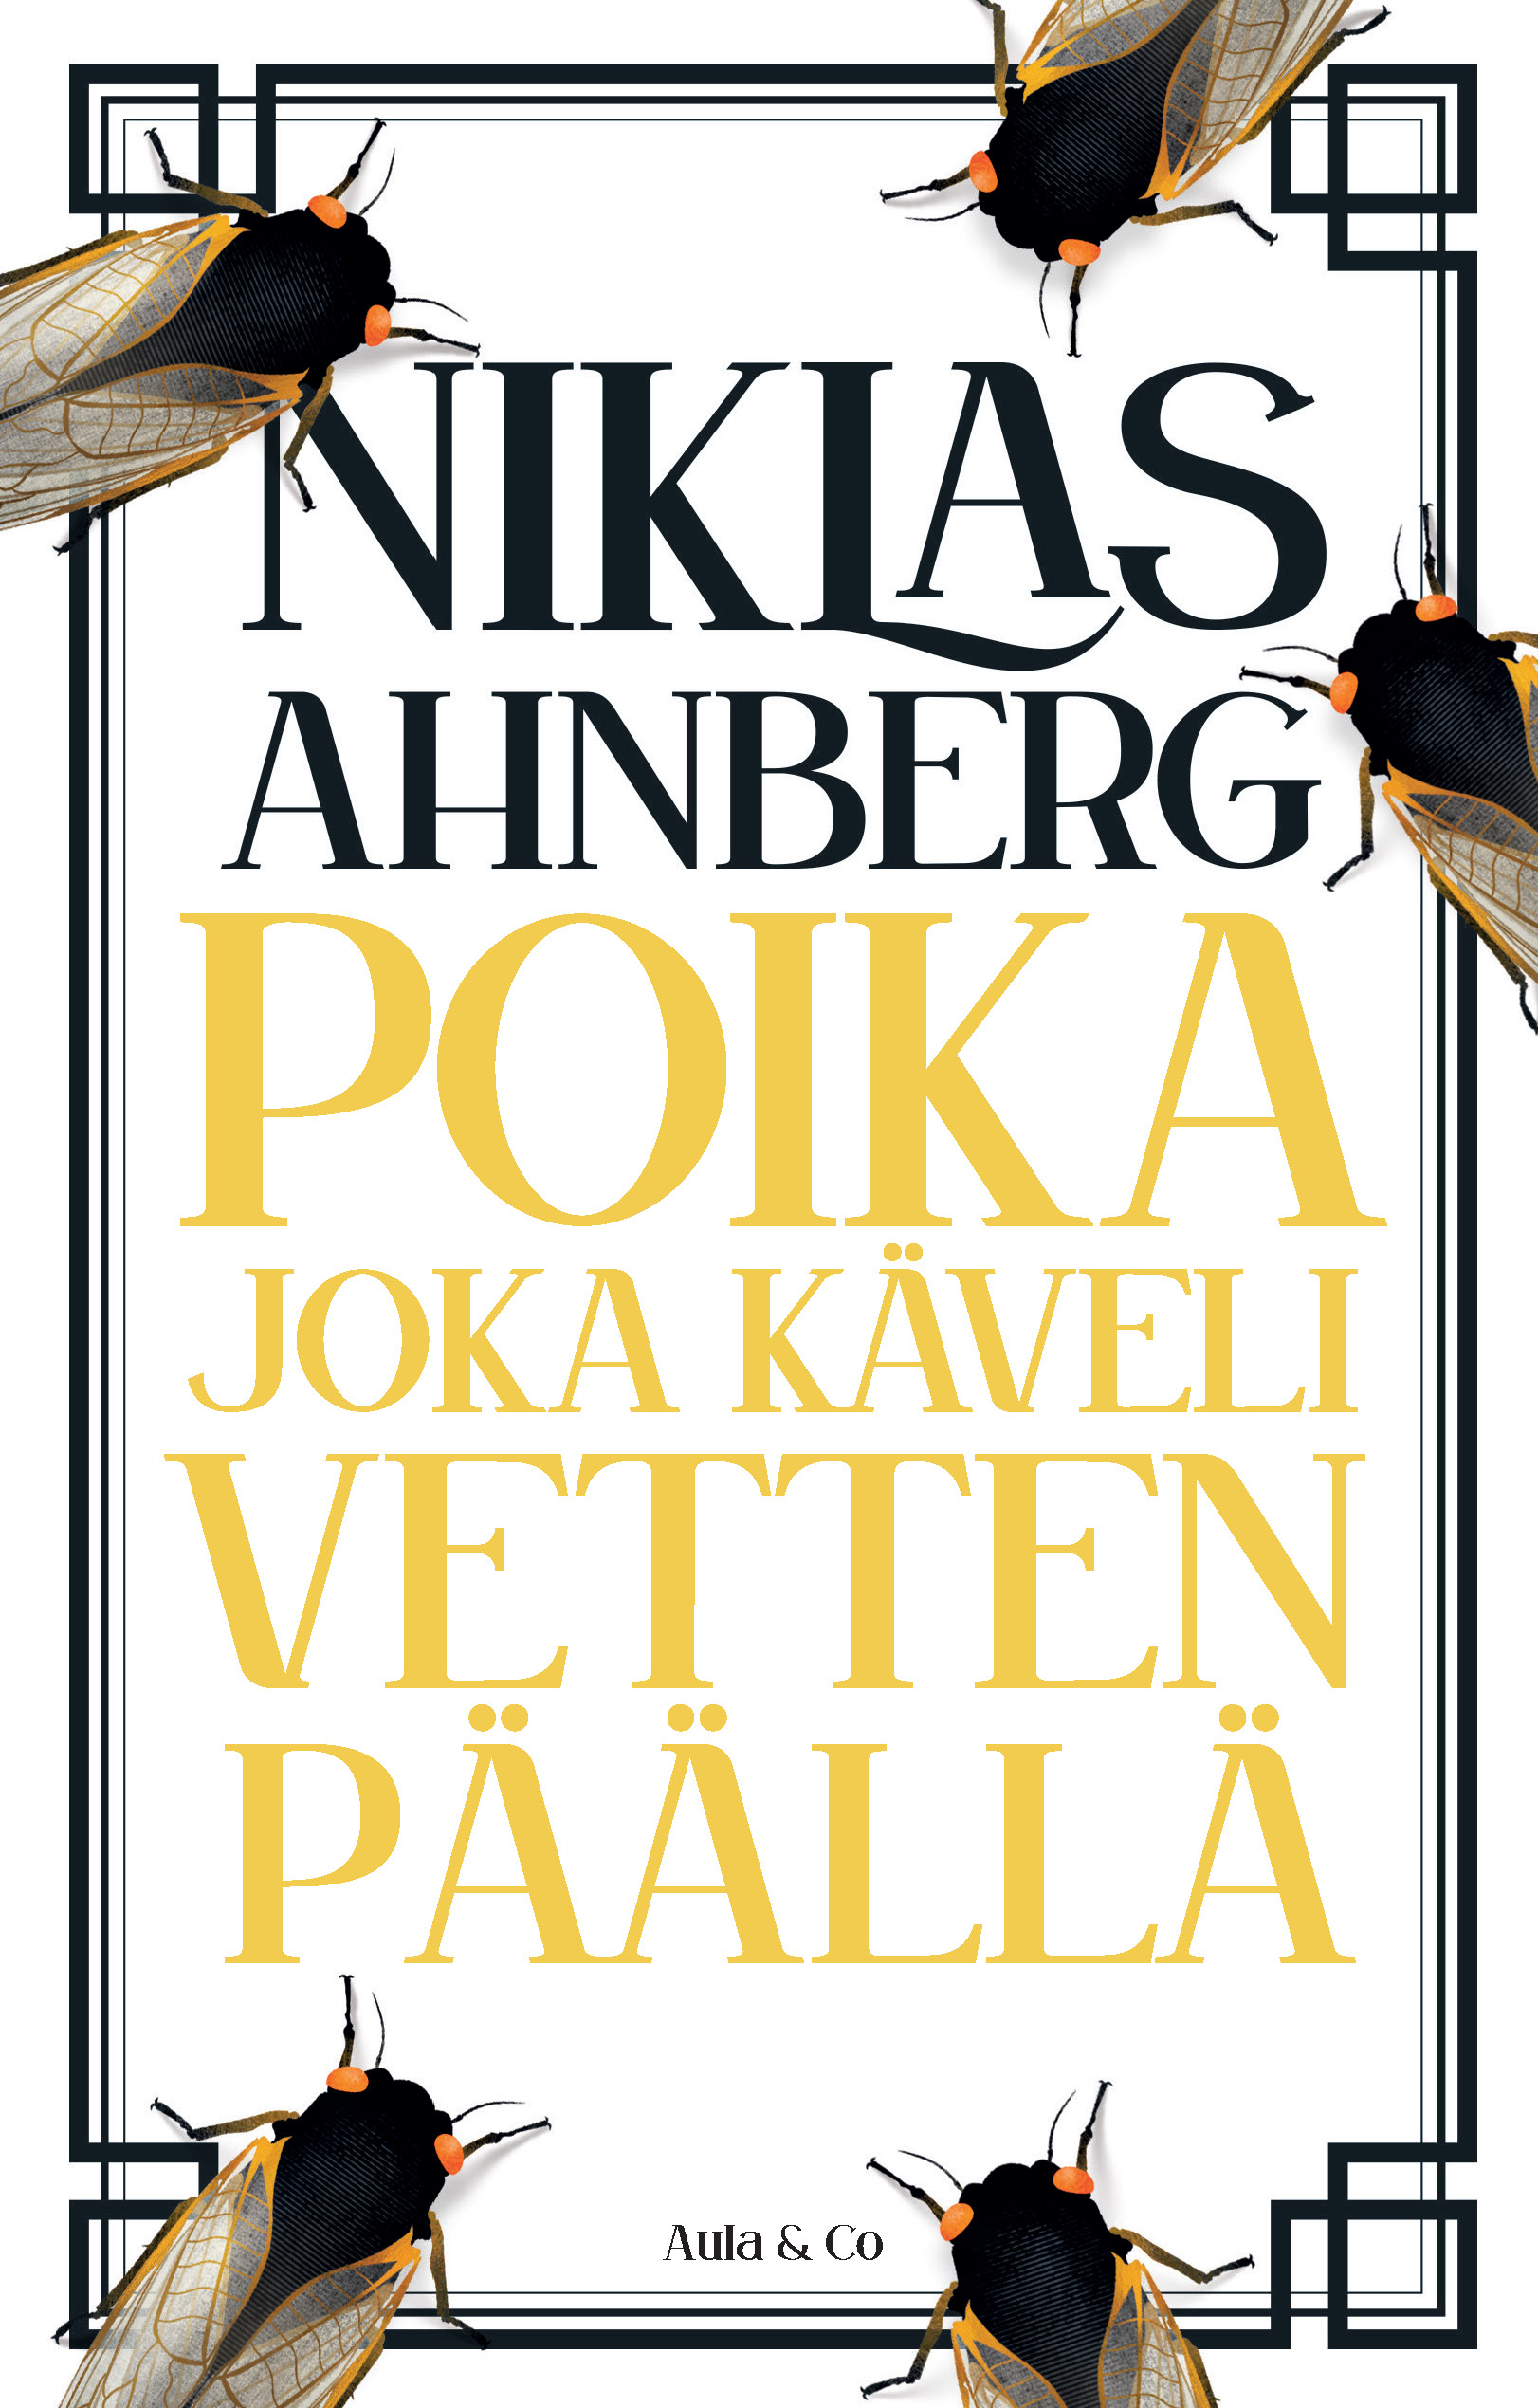 Niklas Ahnberg: Poika joka käveli vetten päällä (Hardcover, suomi language, Aula & Co)